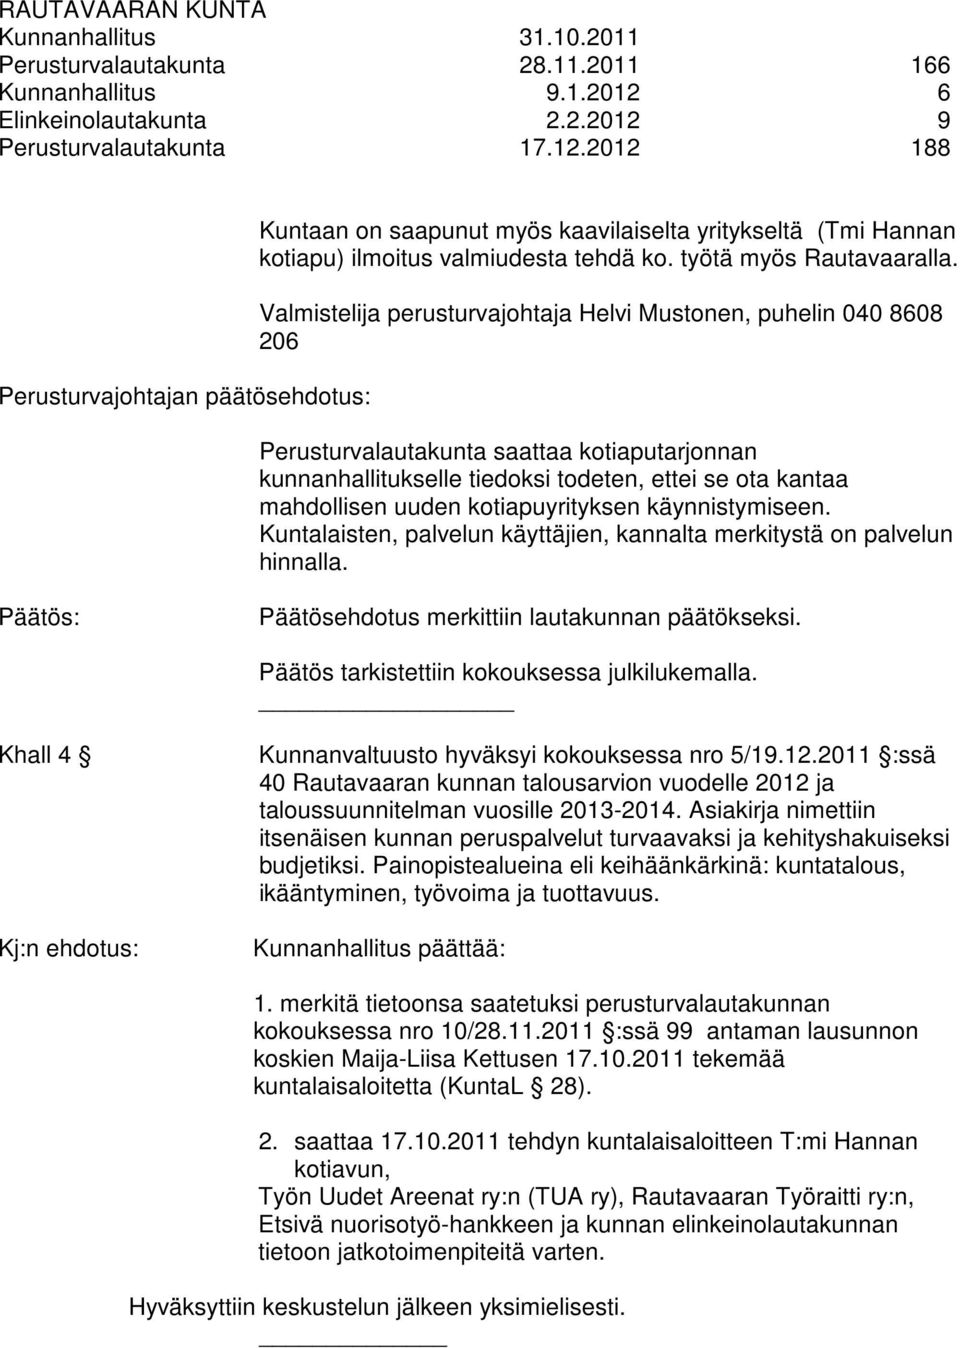 Valmistelija perusturvajohtaja Helvi Mustonen, puhelin 040 8608 206 Perusturvalautakunta saattaa kotiaputarjonnan kunnanhallitukselle tiedoksi todeten, ettei se ota kantaa mahdollisen uuden